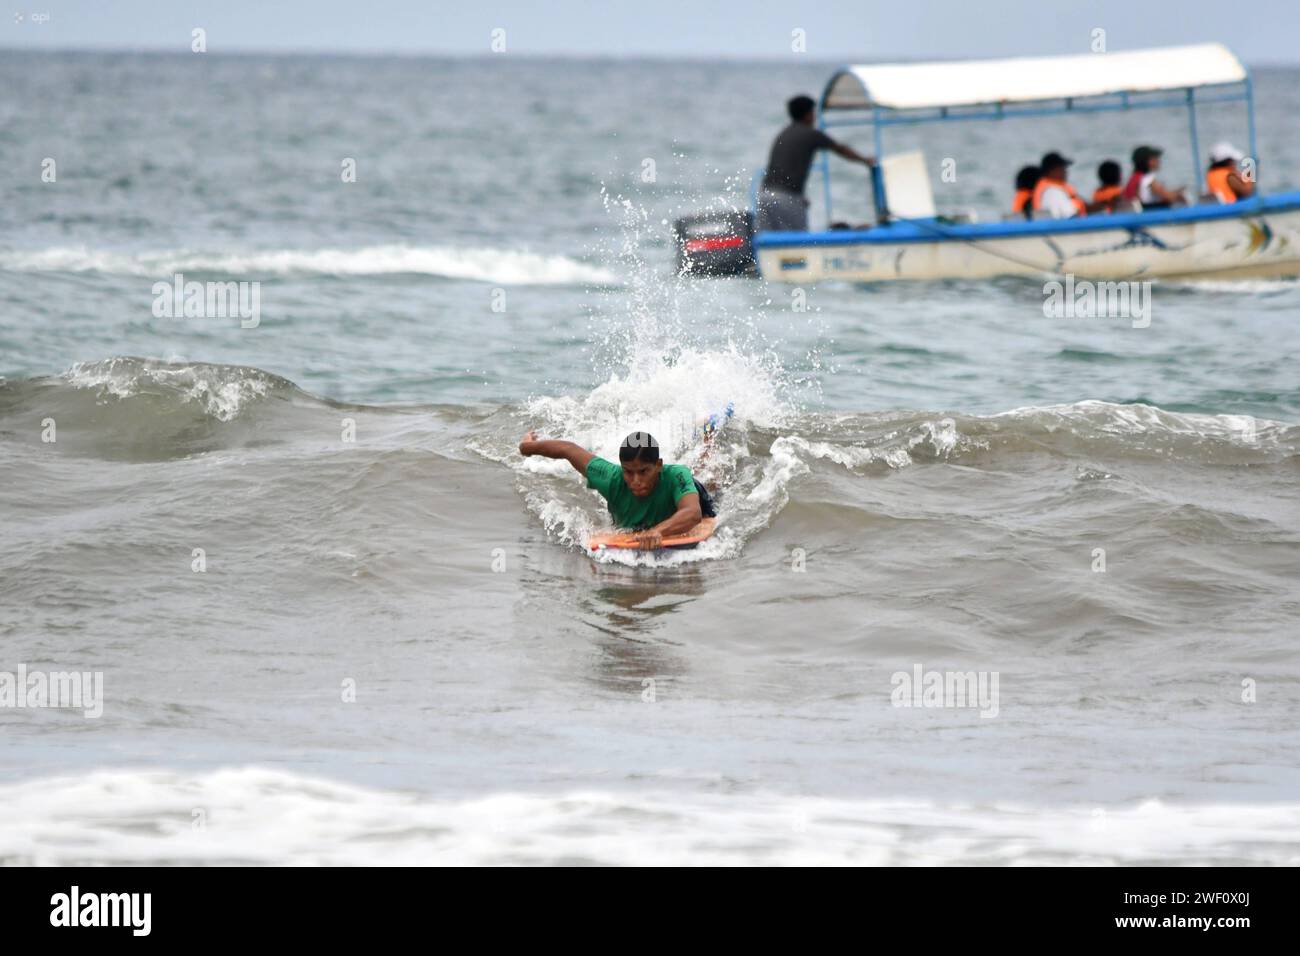 MANTA-SURF-TURISMO-EMERGENCIA-NACIONAL Manta, 27 de enero de 2023. Tras la emergencia de seguridad nacional y el Estado de Excepcion, las playas de Manta de a poco retoman una Mayor presencia de turistas. TambiÃ n se lleva a cabo la primera edicion del Manta Pro Surf 2024, organisado por la Liga Pro de Surf y que espera llevar esta competencia a diferentes playas de Ecuador. API / Ariel OCHOA Manta Manabi Ecuador SOI-MANTA-SURF-TURISMO-EMERGENCIA-NACIONAL-f122571628801b834c5e17ed1327cf99 *** MANTA SURF TOURISMUS NATIONALE NOTFALL Manta, 27. Januar 2023 nach der nationalen Sicherheit NOTFALL und Stockfoto